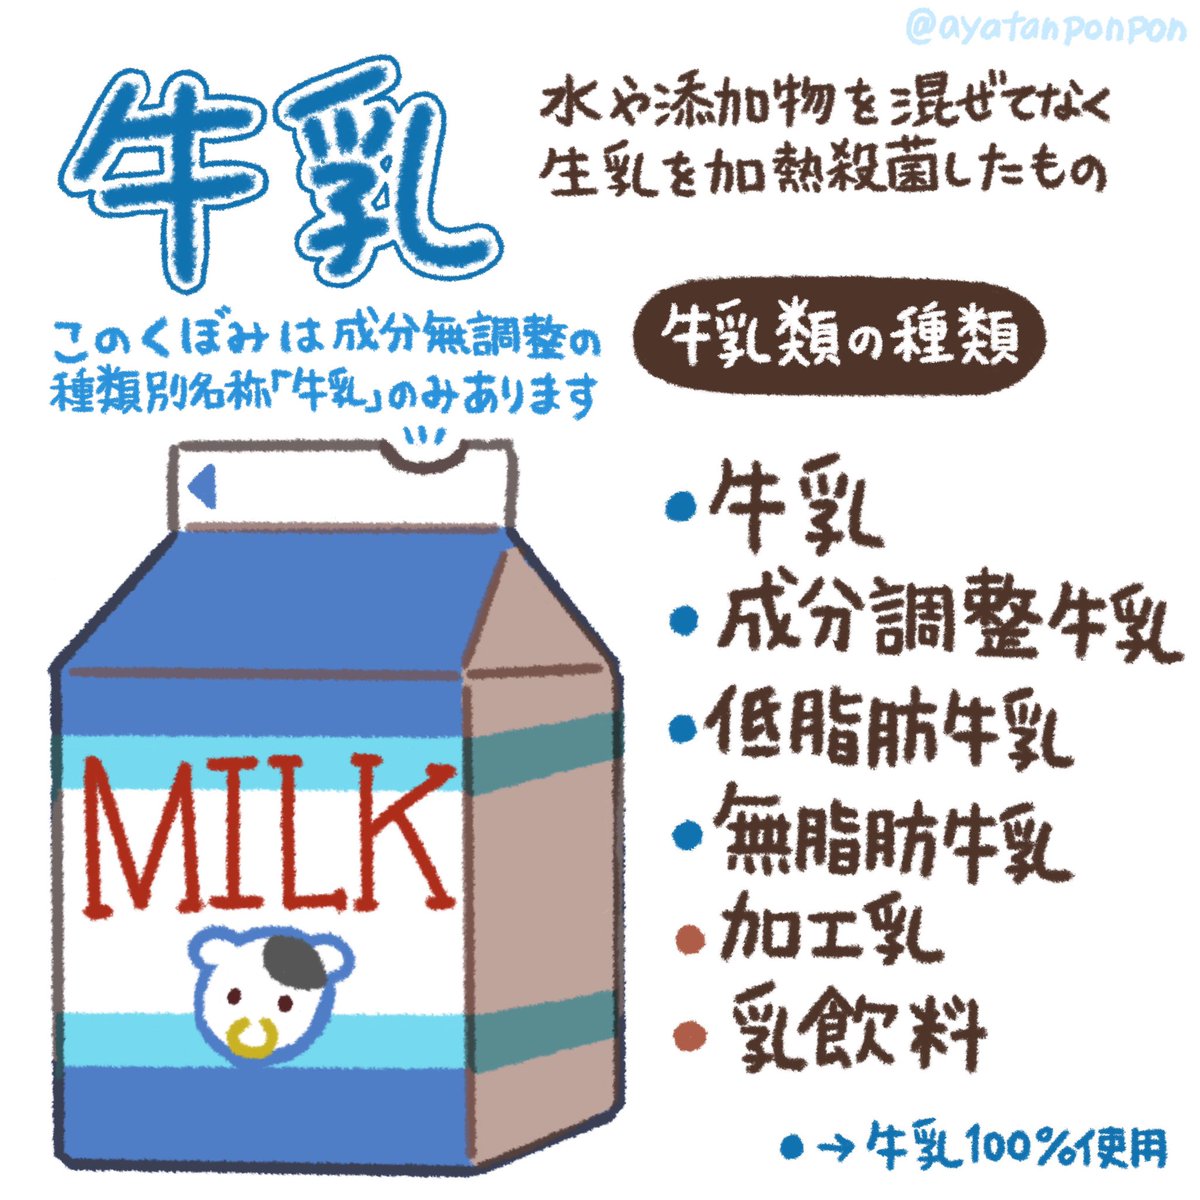 家庭科の時間だよ❗️

牛乳には色々種類ありますが
だいたい私たちが購入しているものは
「牛乳」
「加工乳」
「乳飲料」
だと思います🥛
それぞれ特徴があり実際飲んでみて、栄養や自分の体にあった牛乳を探してみましょう🐄

(イラスト修正追加🙏 